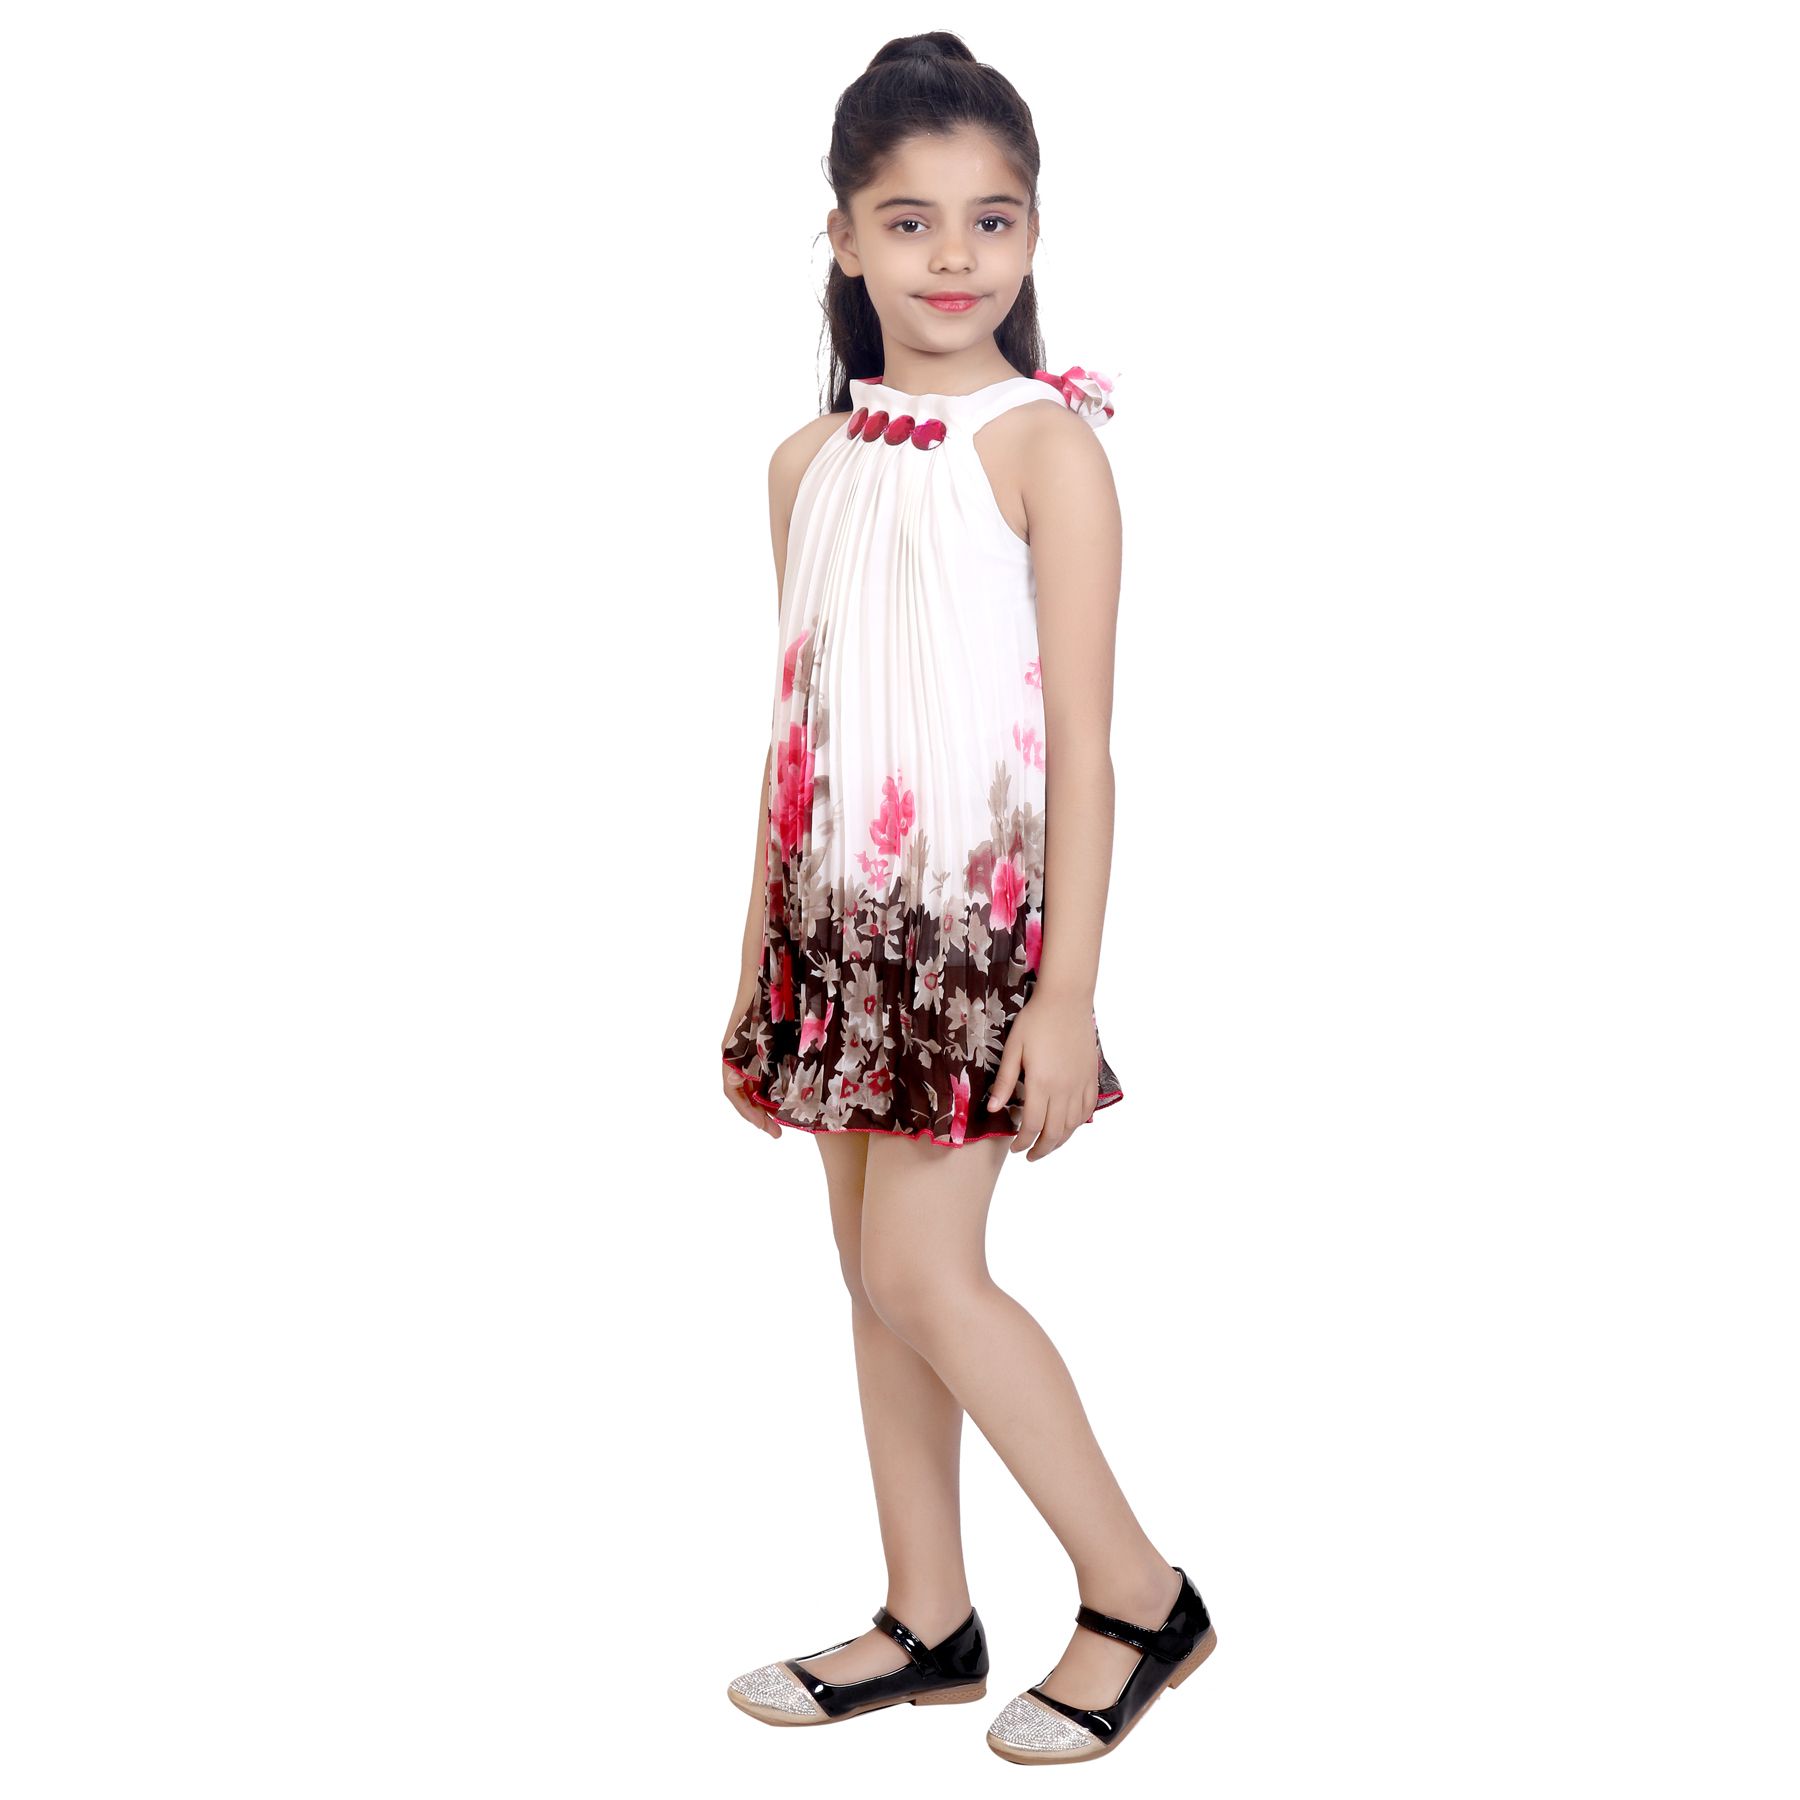 KBKIDSWEAR Girl's Net Summer Wear Stylish Sleeveless Frock - Buy ...